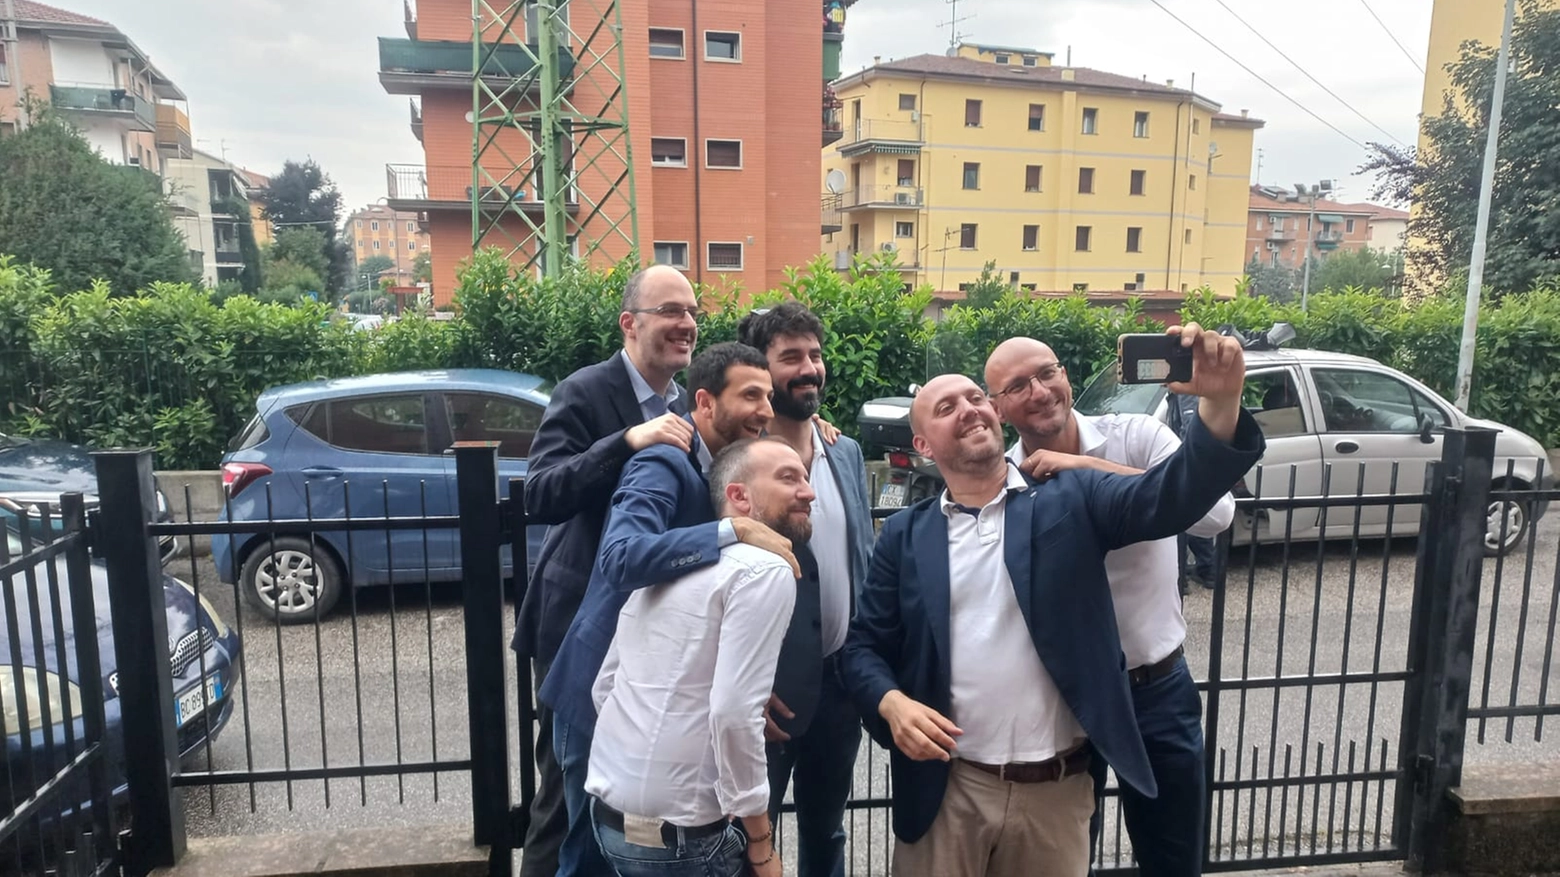 Il nuovo sindaco di Casalecchio Matteo Ruggeri festeggia la vittoria insieme al suo team